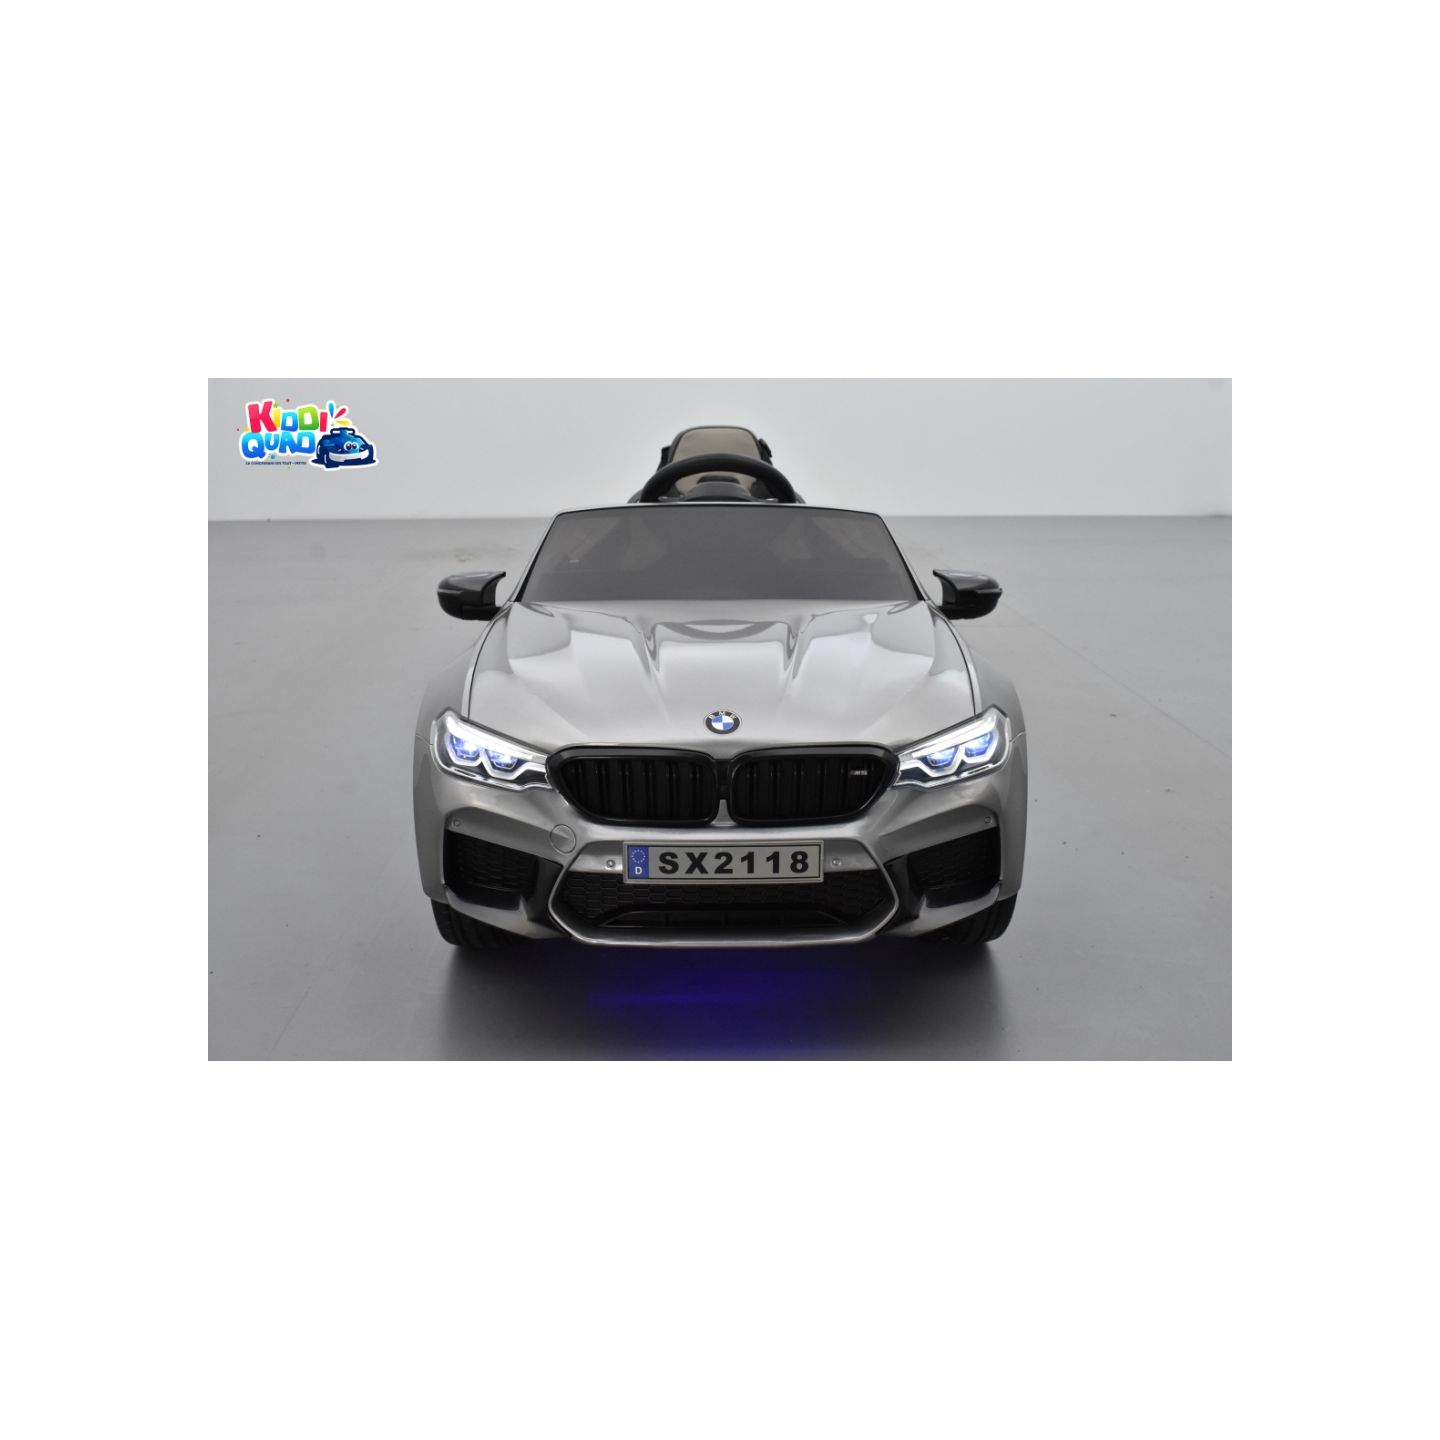 BMW M5 24 Volts gris, voiture électrique enfant 24 Volts 1 place, 2 moteurs